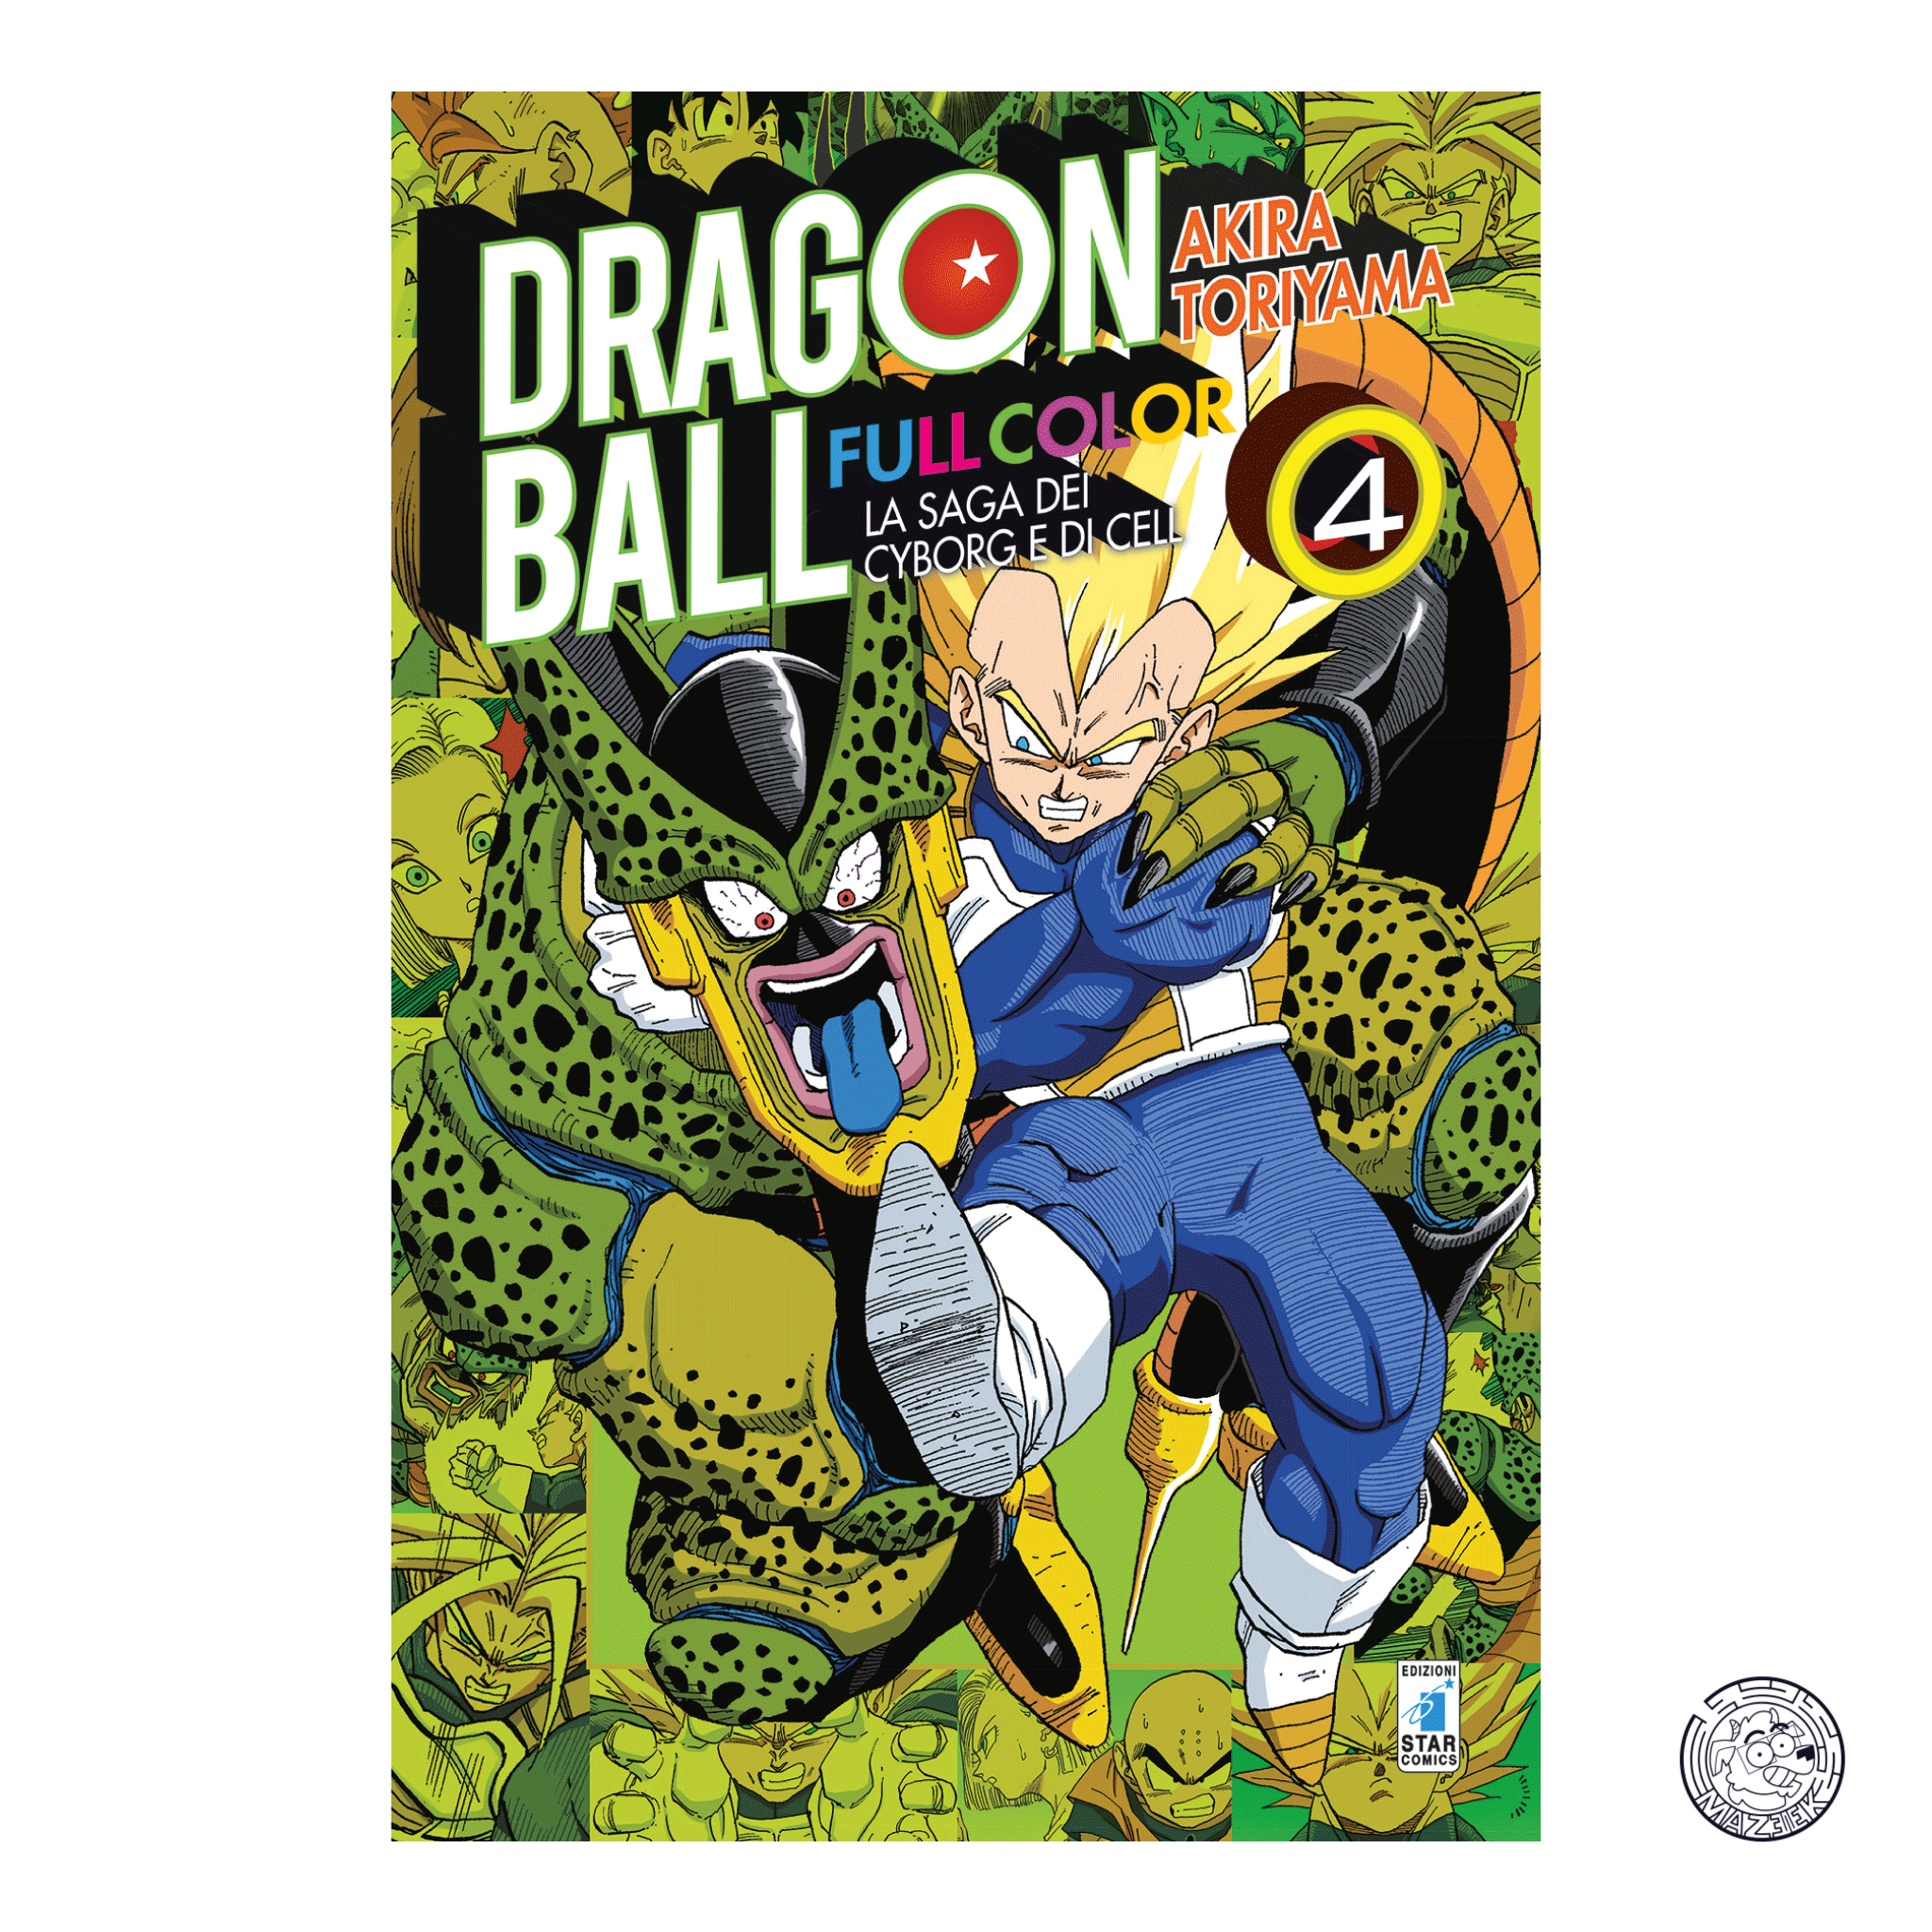 Dragon Ball Full Color 24: The Cyborg and Cell Saga 4